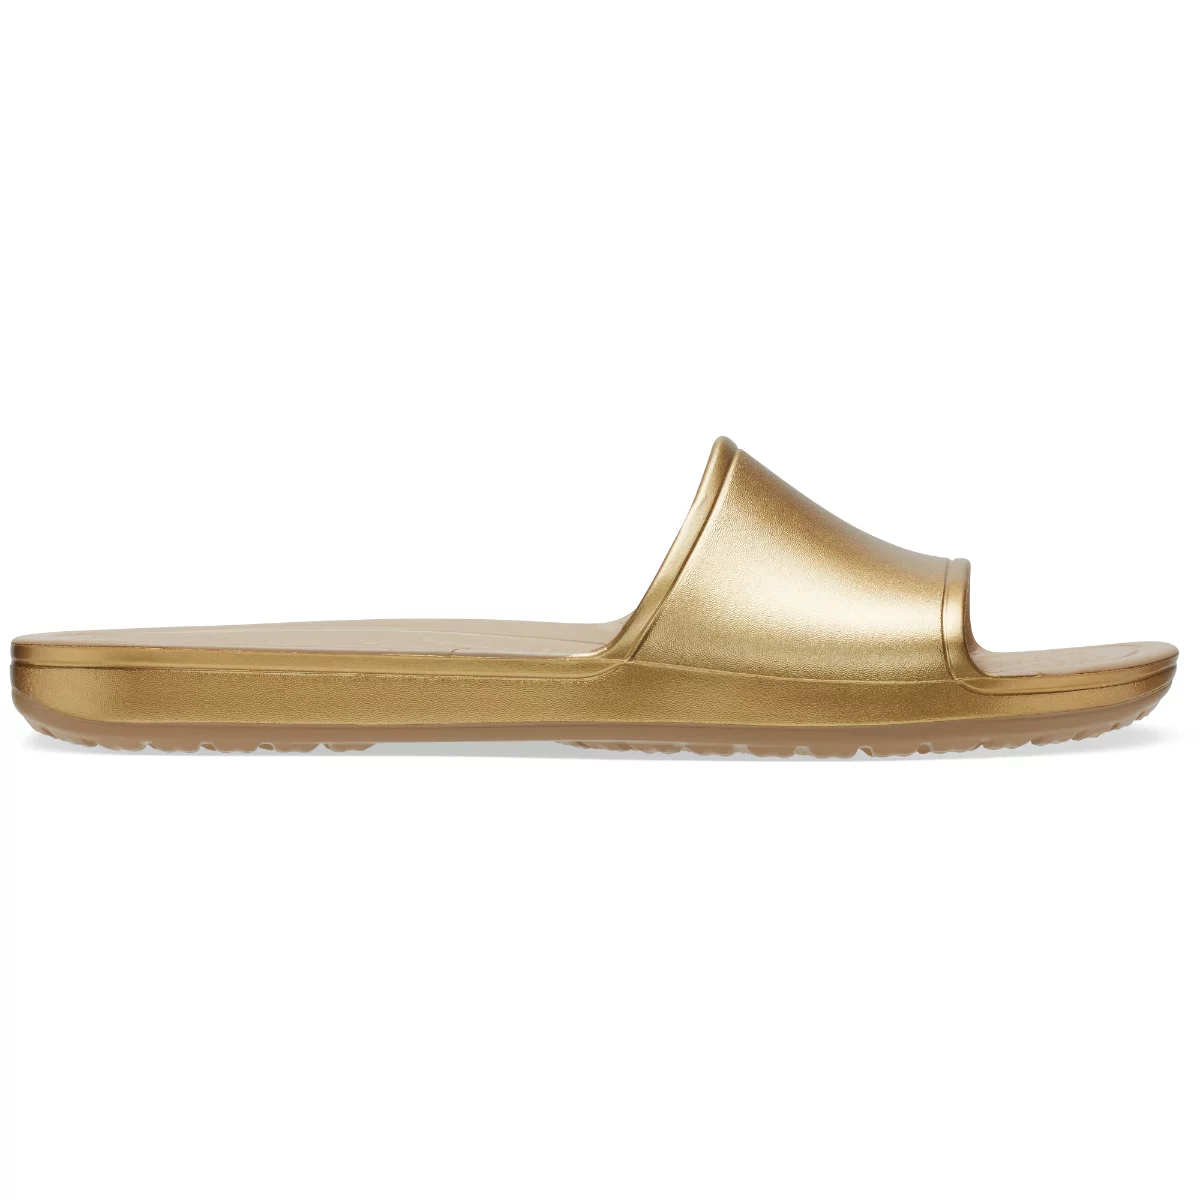 Crocs papucs Kadee Metallic Slide arany színben 37-38 méretben